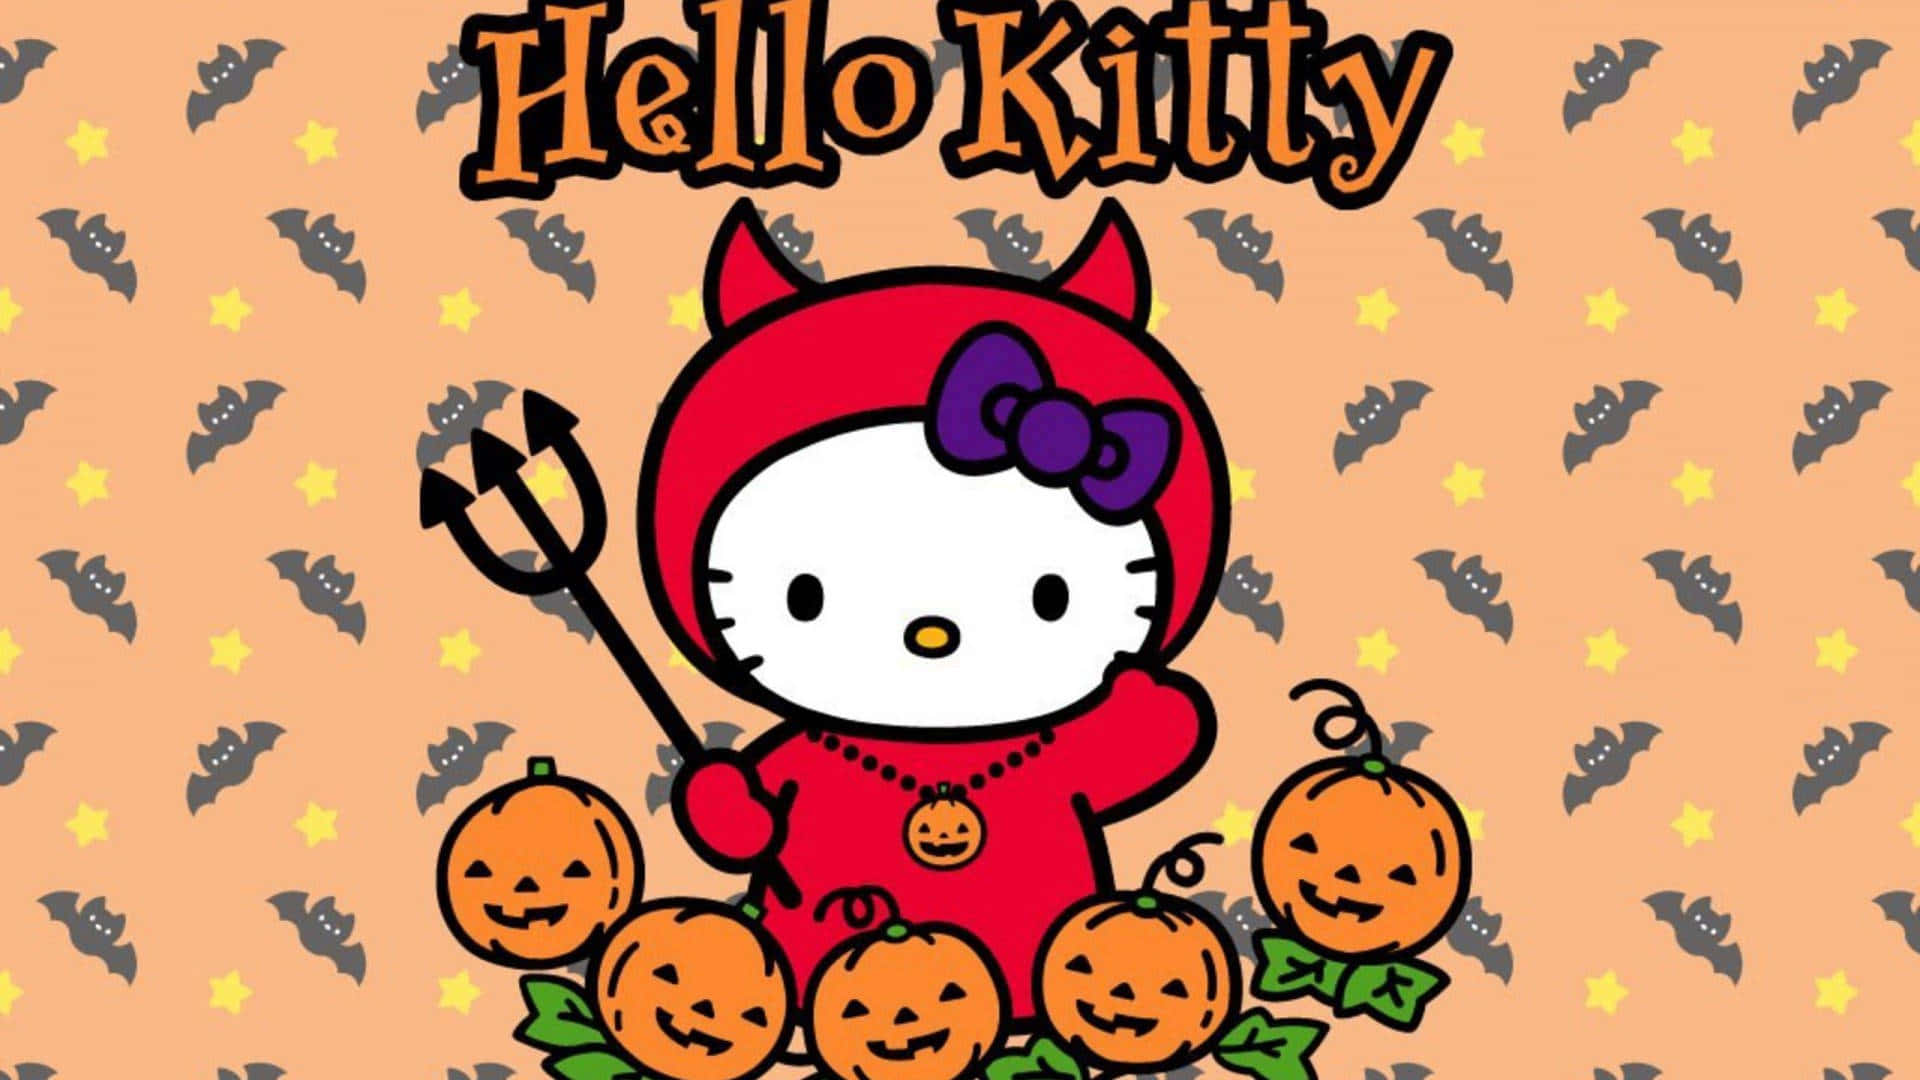 Hello Kitty Halloween Sanrio Pfp Wallpaper